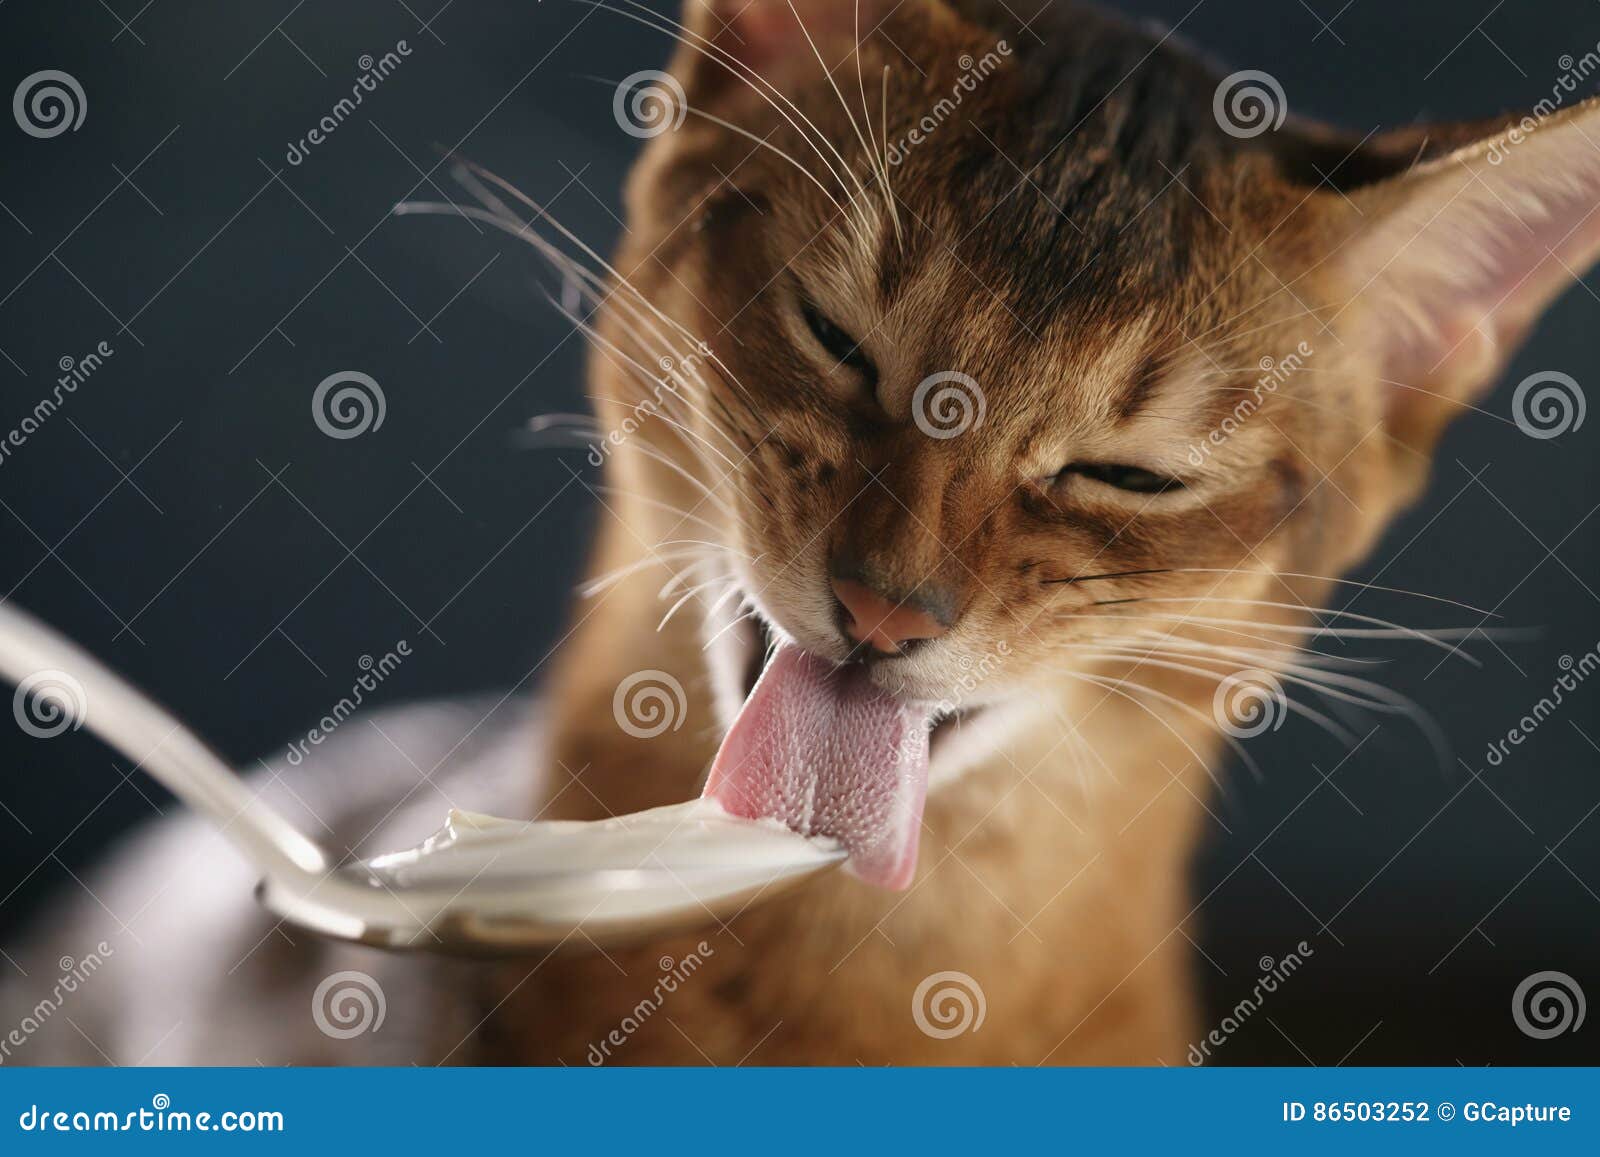 Кошка ест птицу. Кошка облизывается. Кот лакает молоко. Кот кушает йогурт. Абиссинский кот ест.